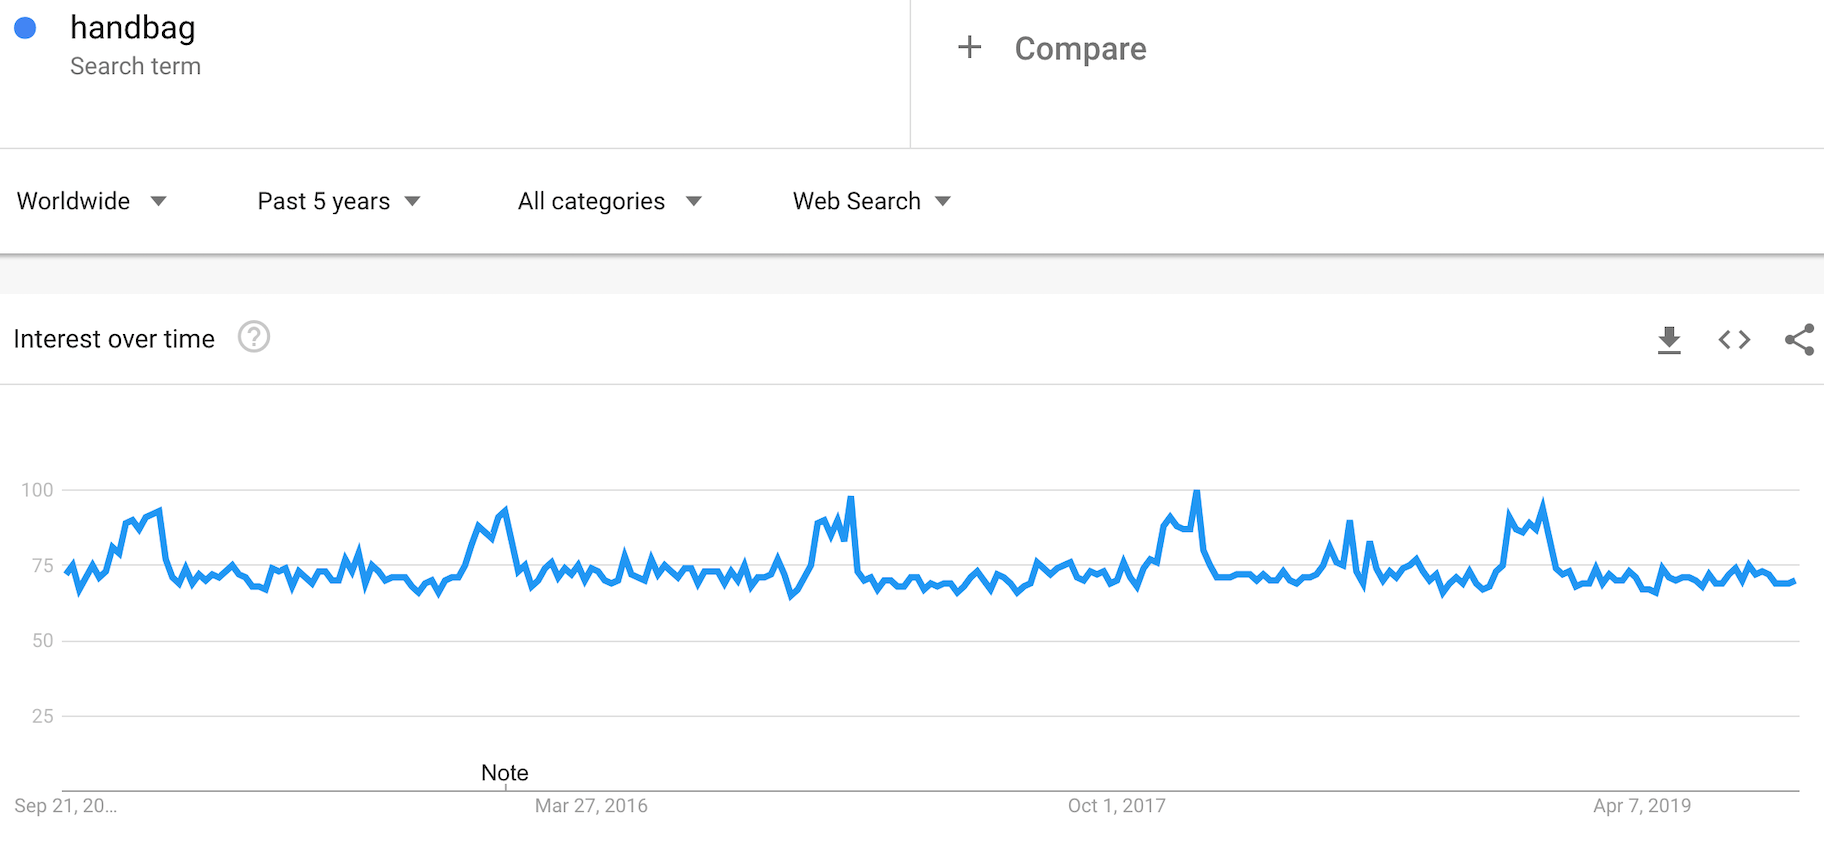 谷歌趋势显示“手袋”搜索词的受欢迎程度